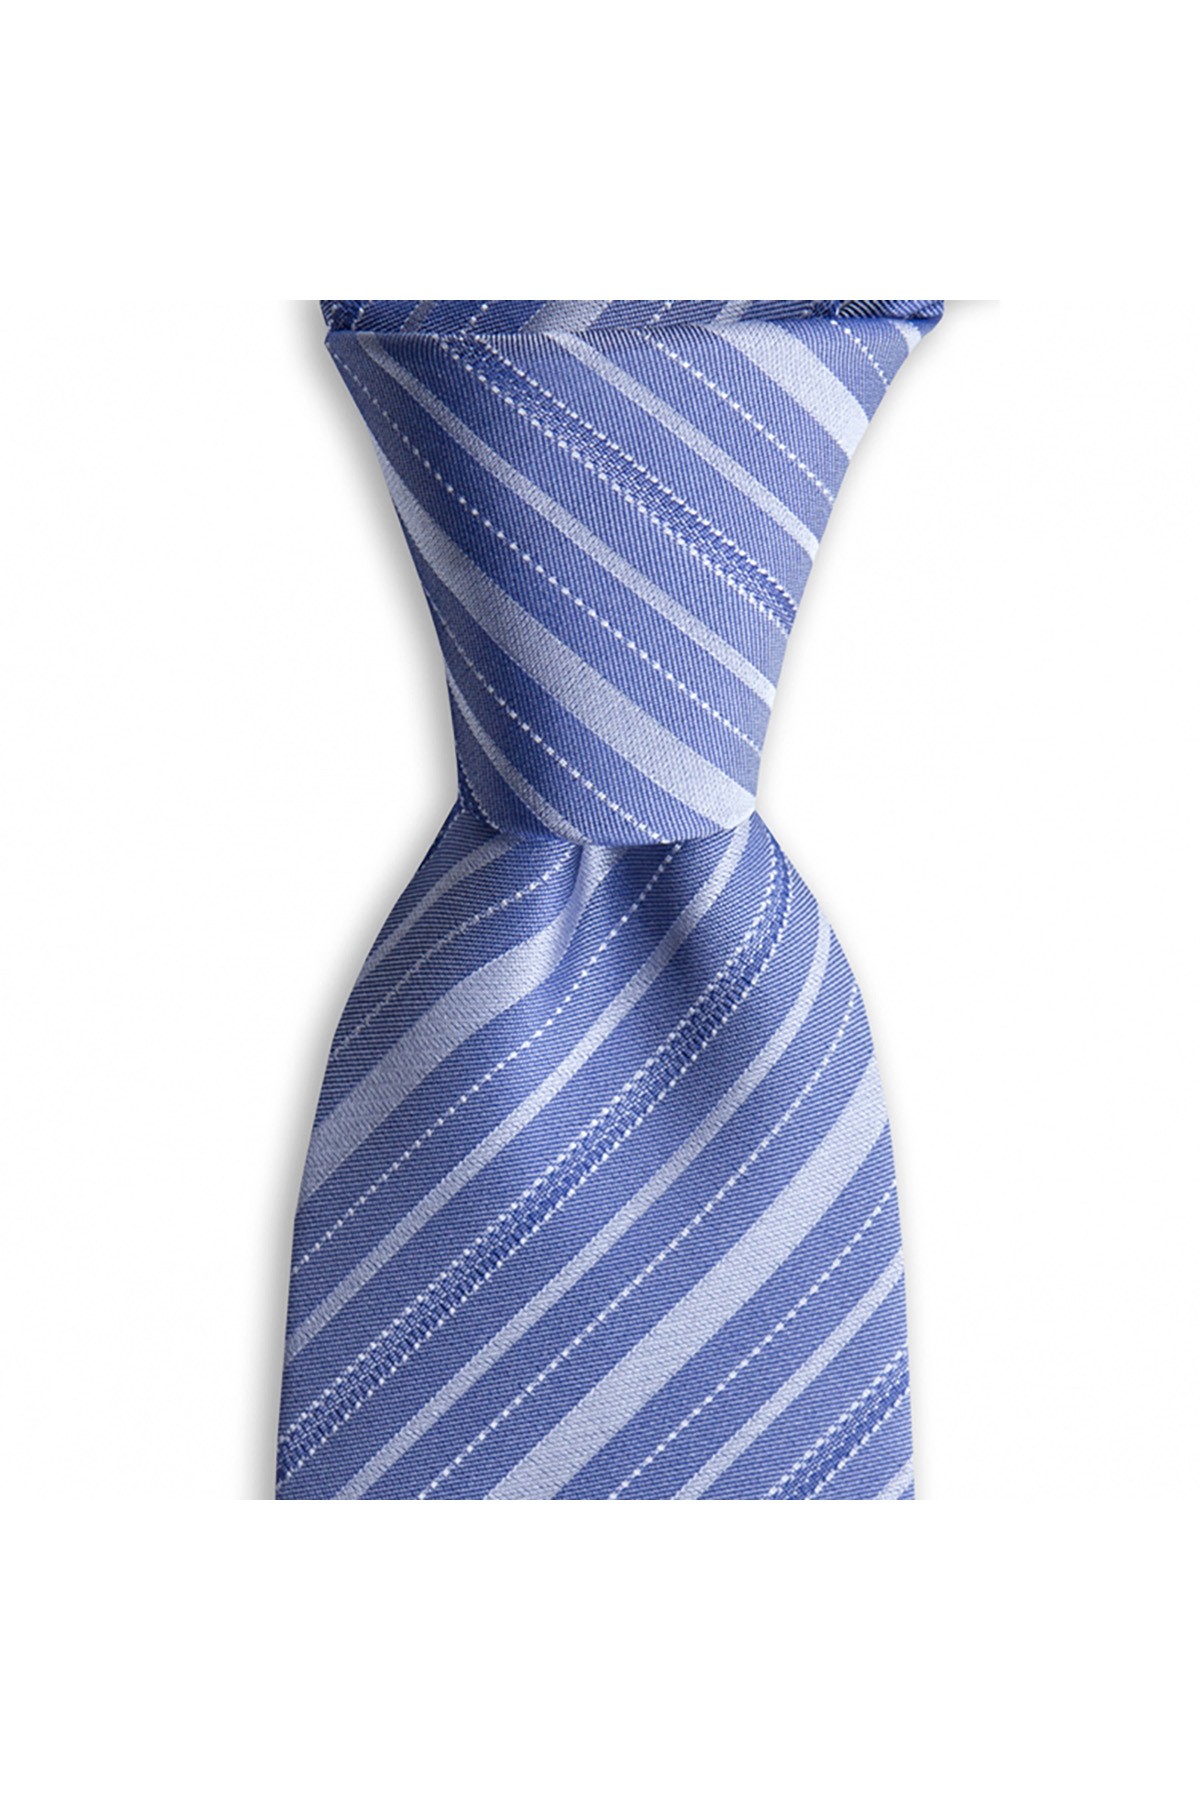 İnce çizgili 8 cm genişliğinde klasik ipek kravat - Lacivert